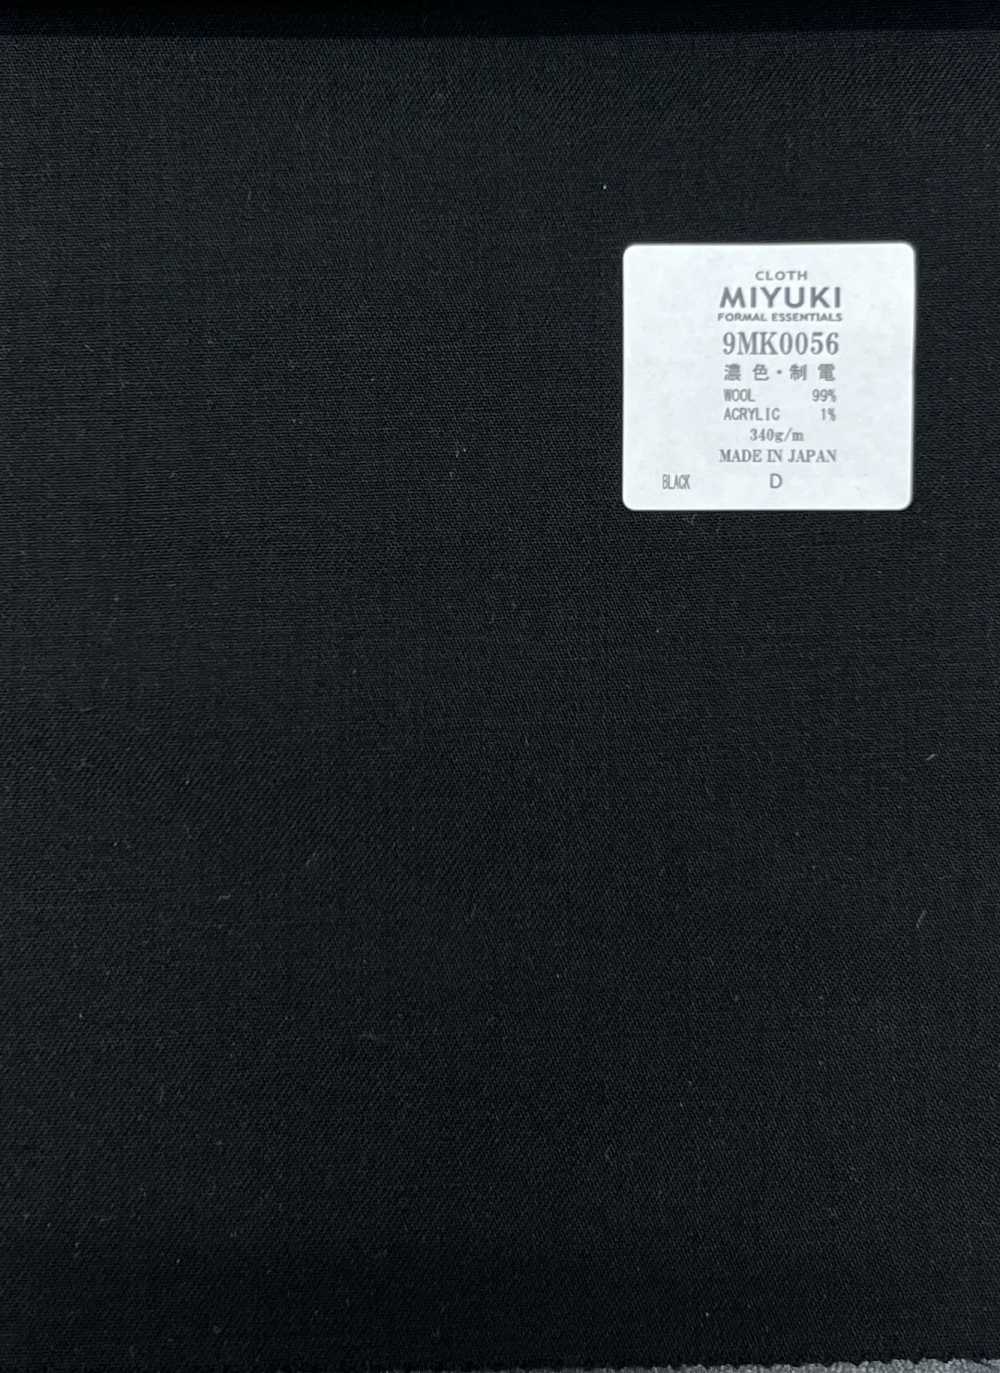 9MK0056 MIYUKI FORMAL[Textile]